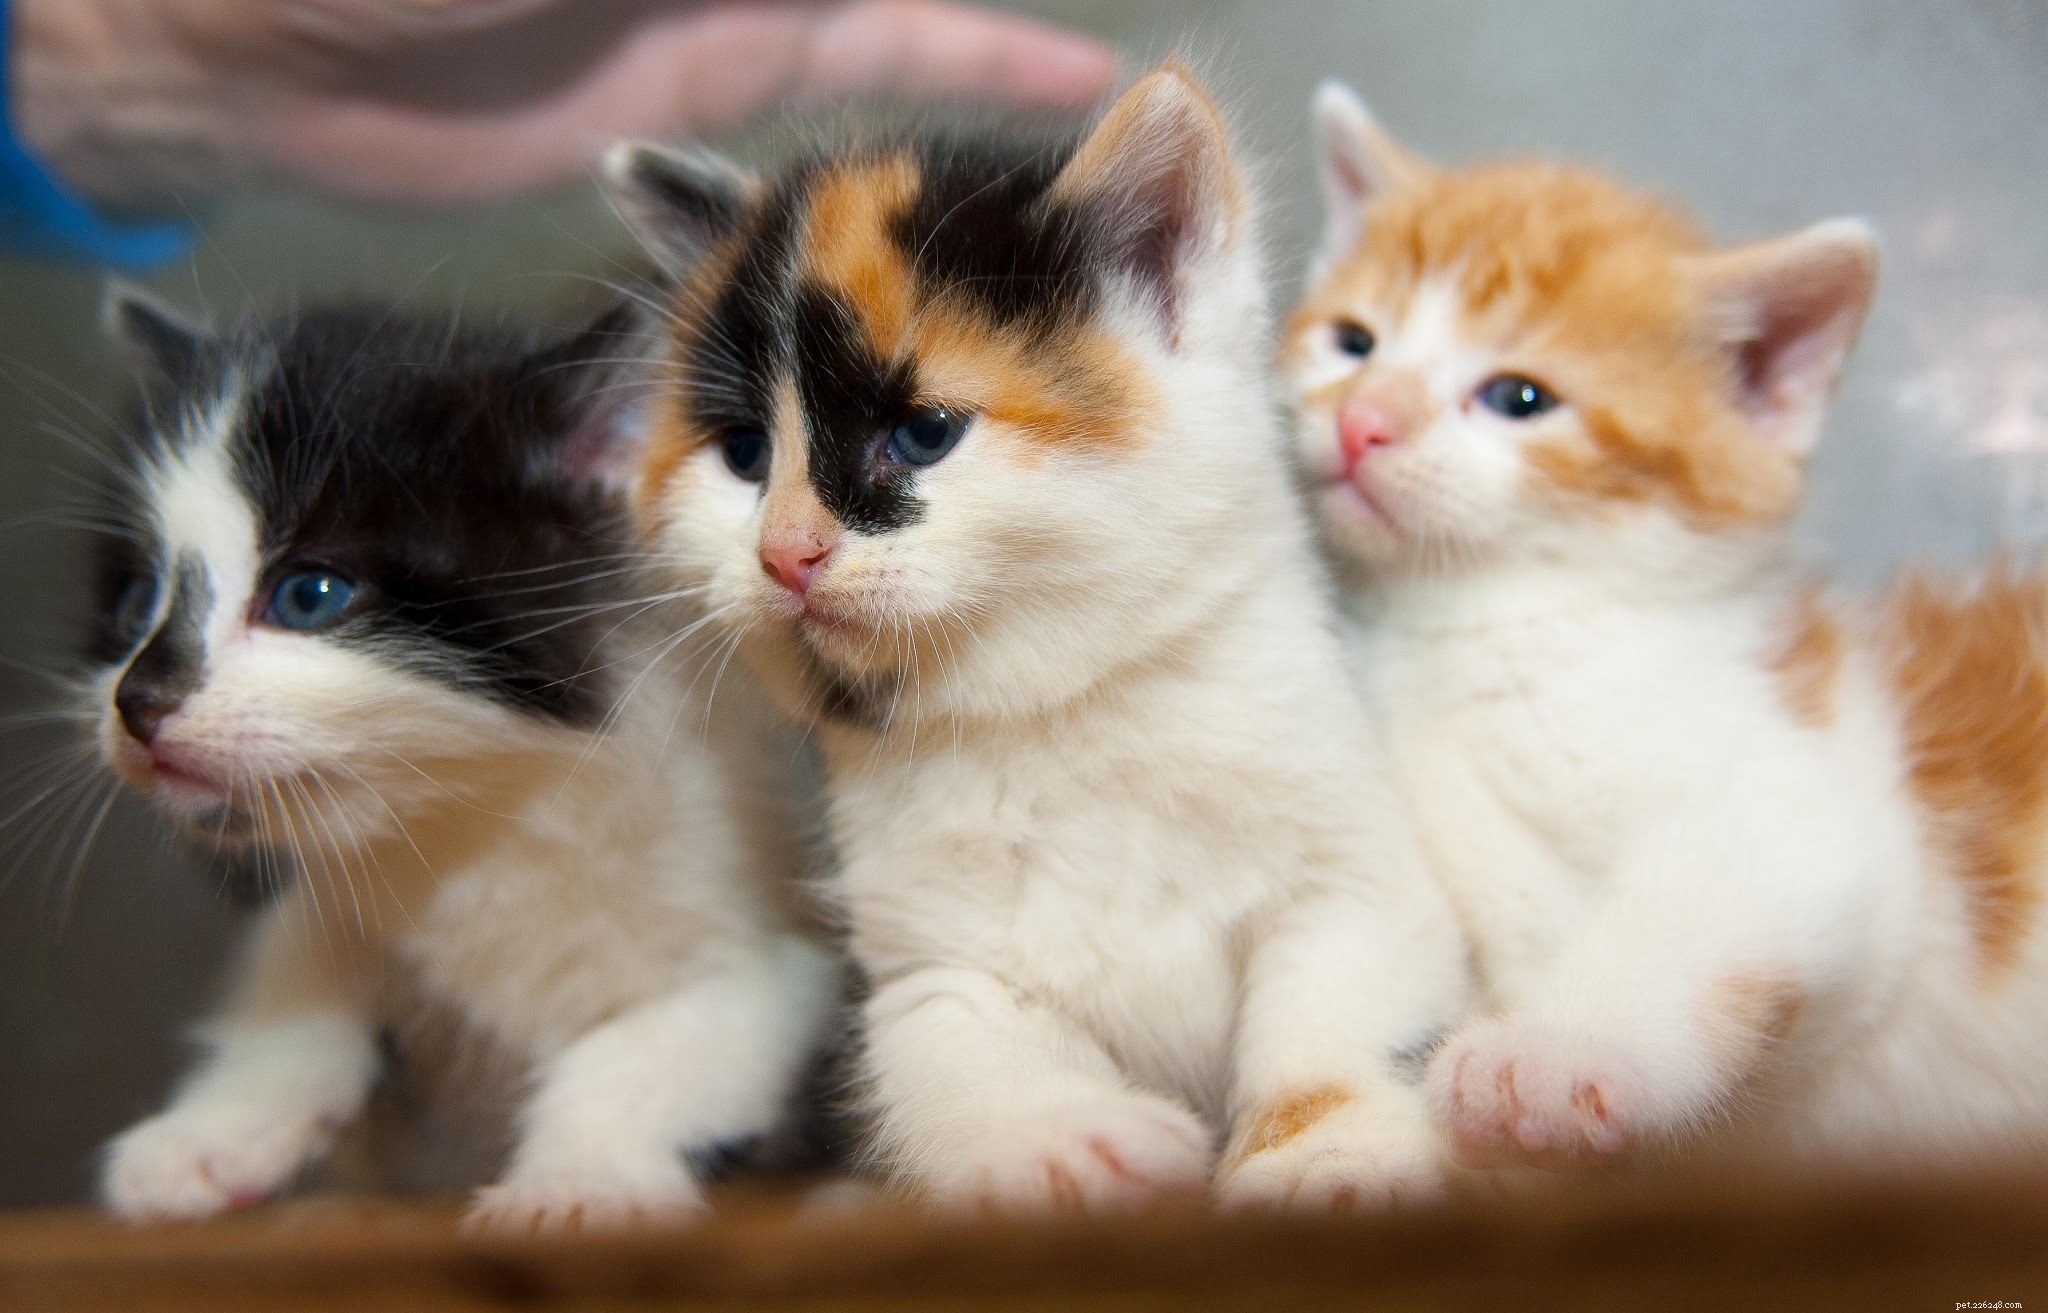 Um novo começo para três gatinhos encontrados em um aterro sanitário.